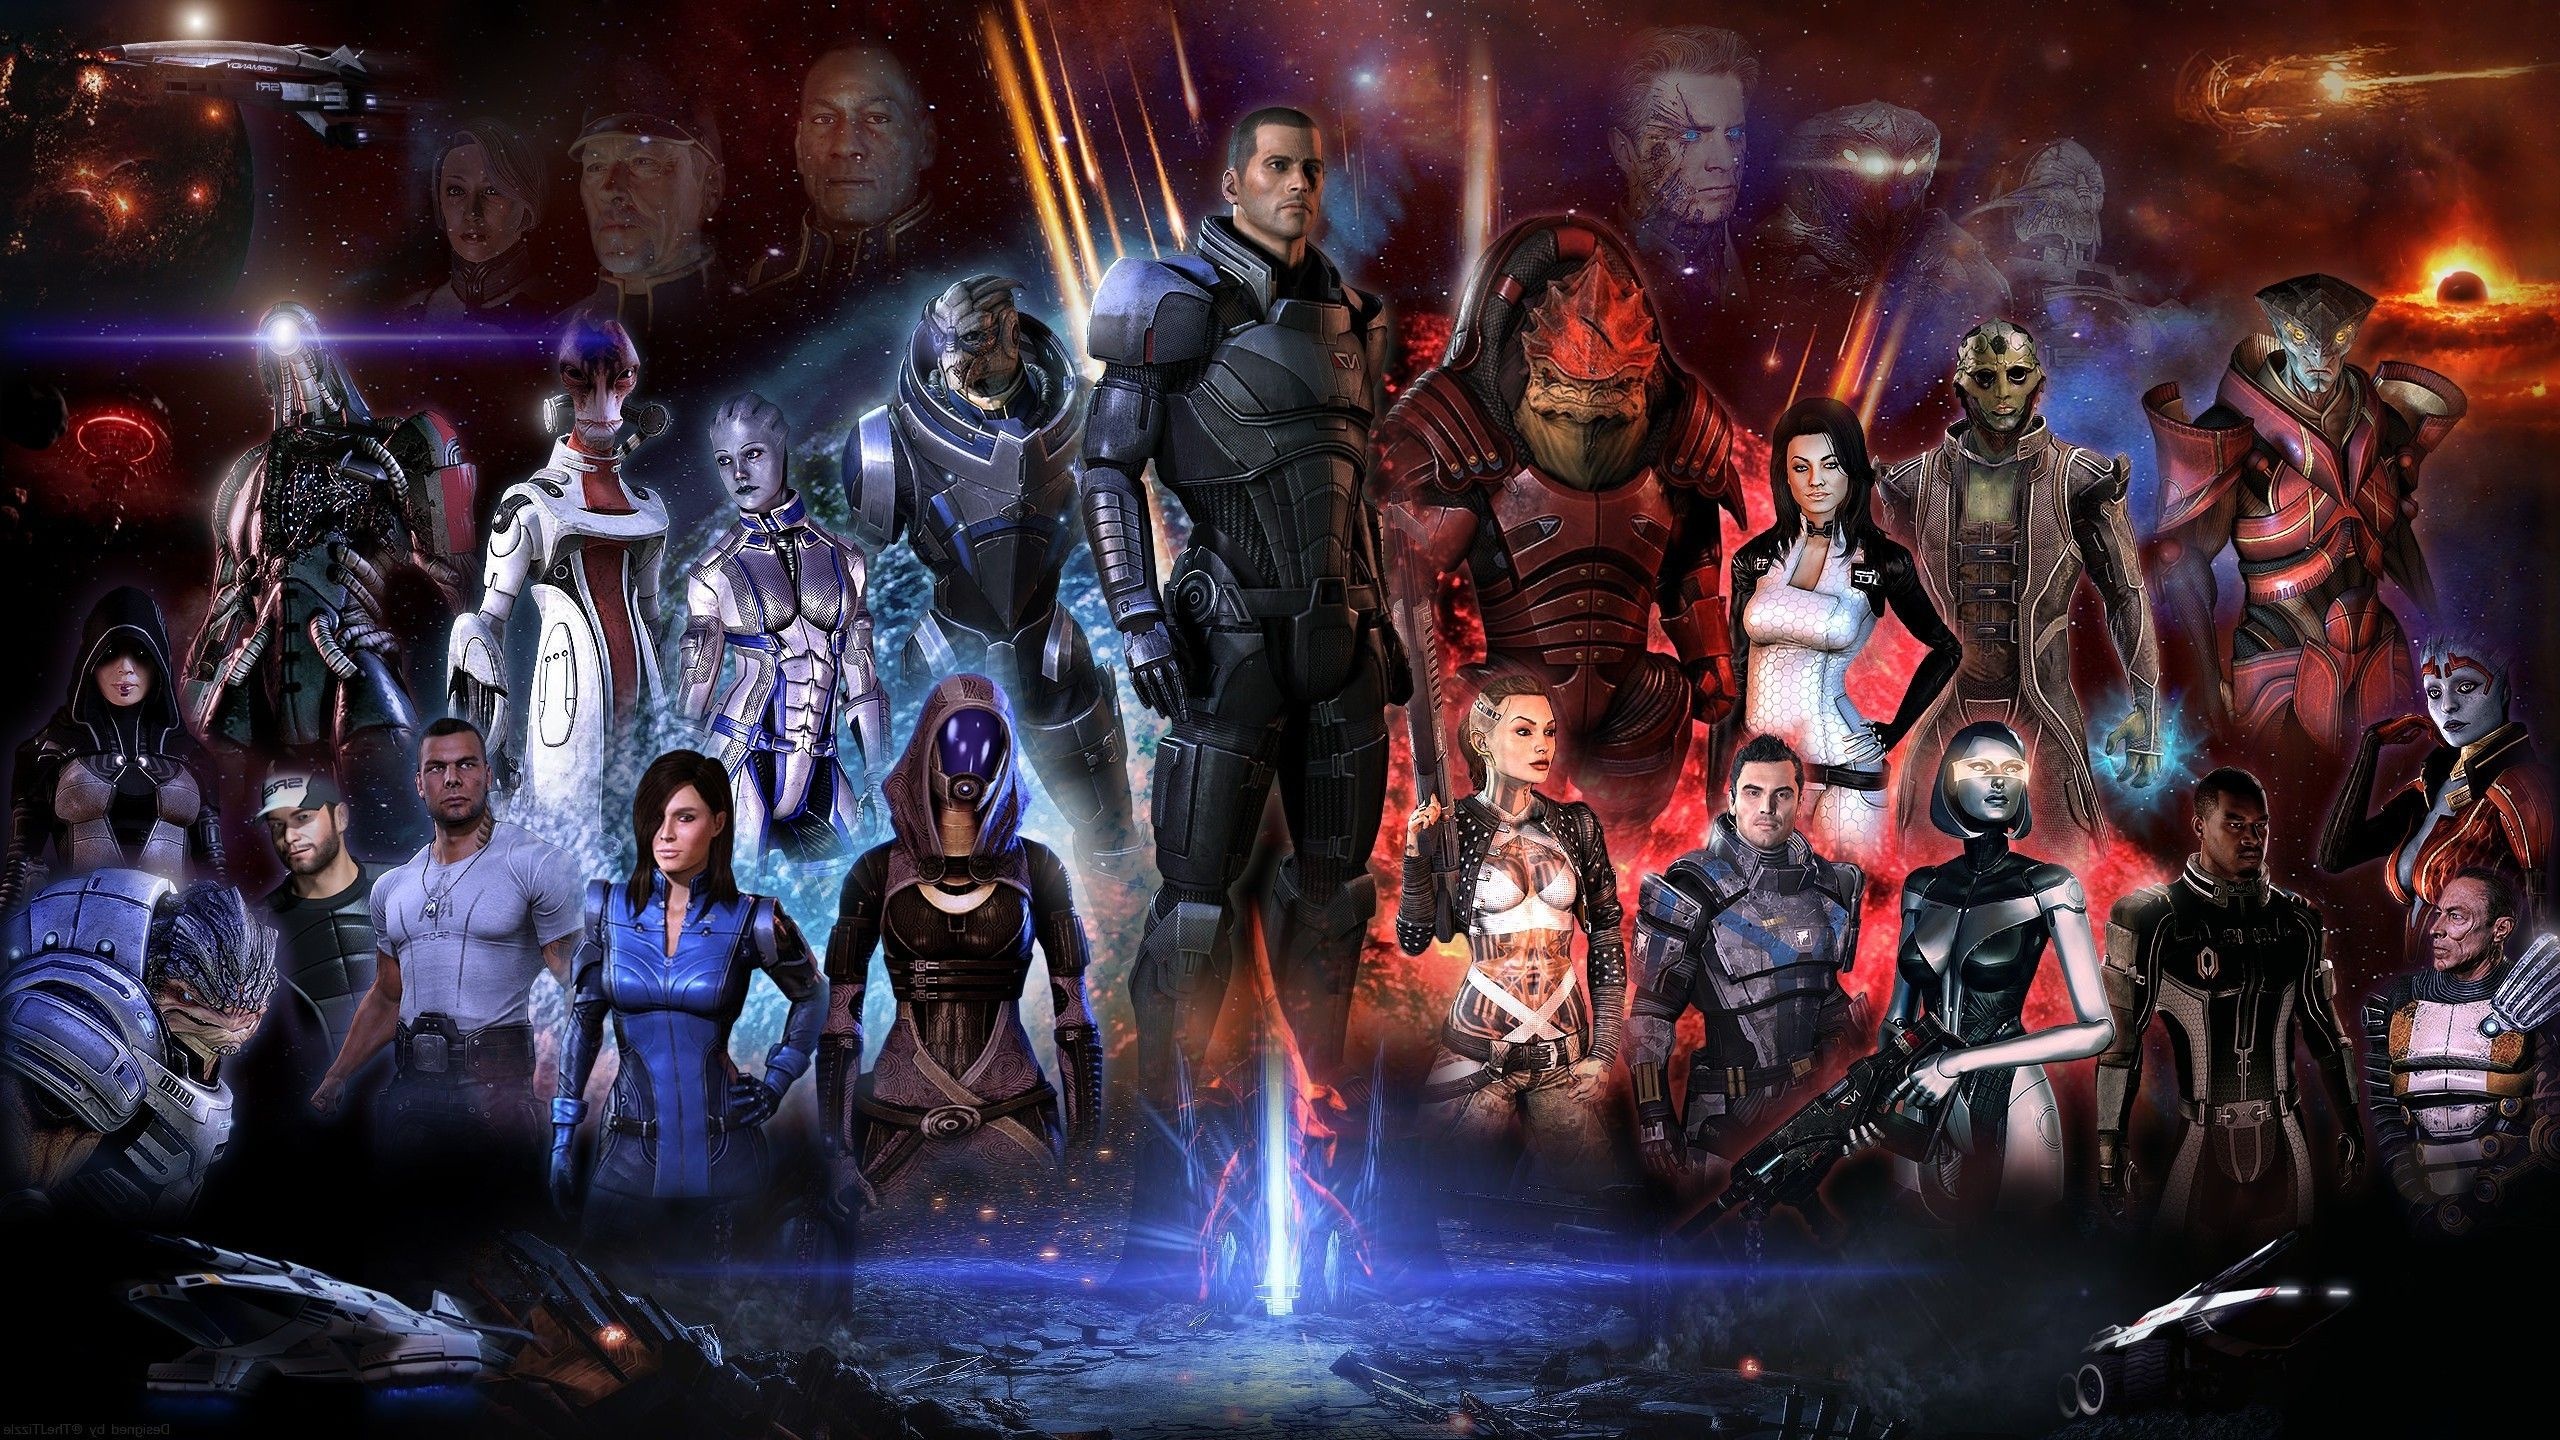 Mass Effect 2: Kasumi, Mass Effect 2 wallpapers, Backgrounds, 2560x1440 HD Desktop